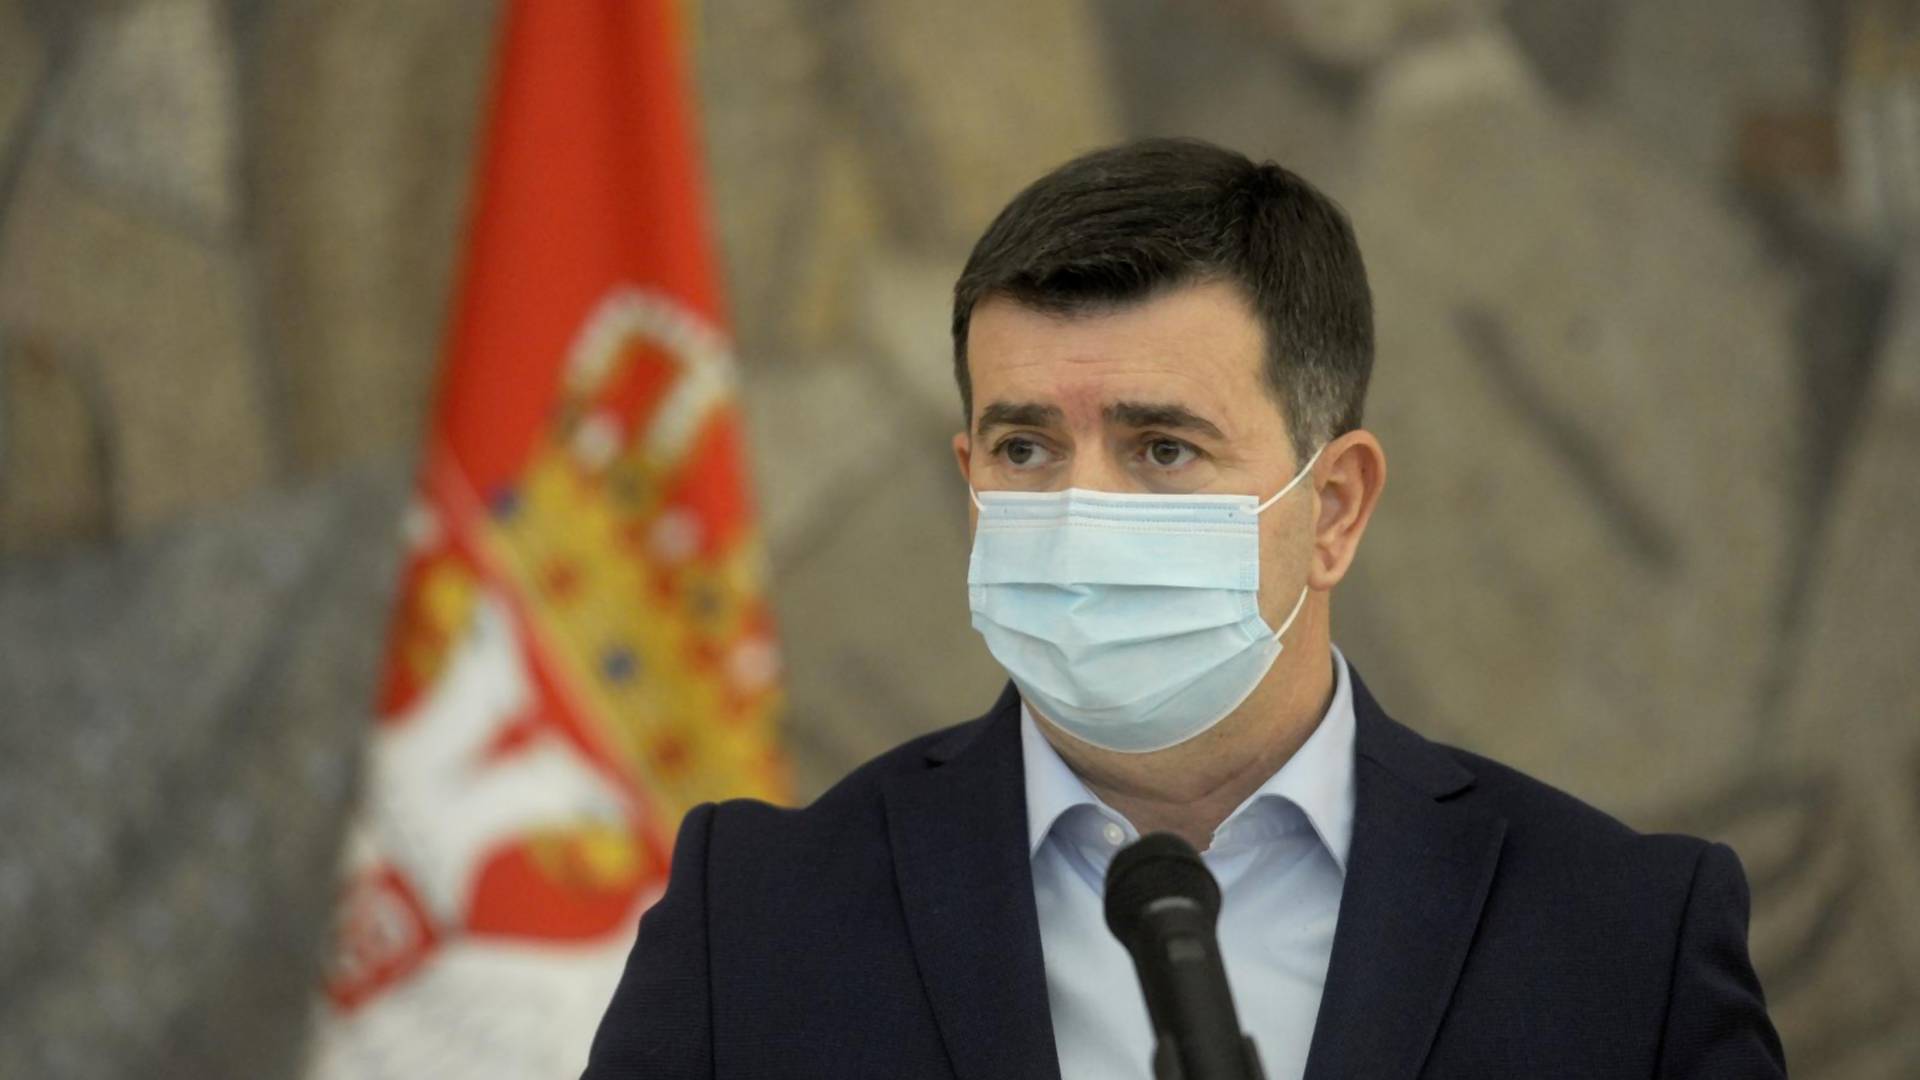 Ne možemo sad da prebrojavamo mrtve lekare: Sramna izjava doktora Đerleka o preminulim kolegama razbesnela Srbiju